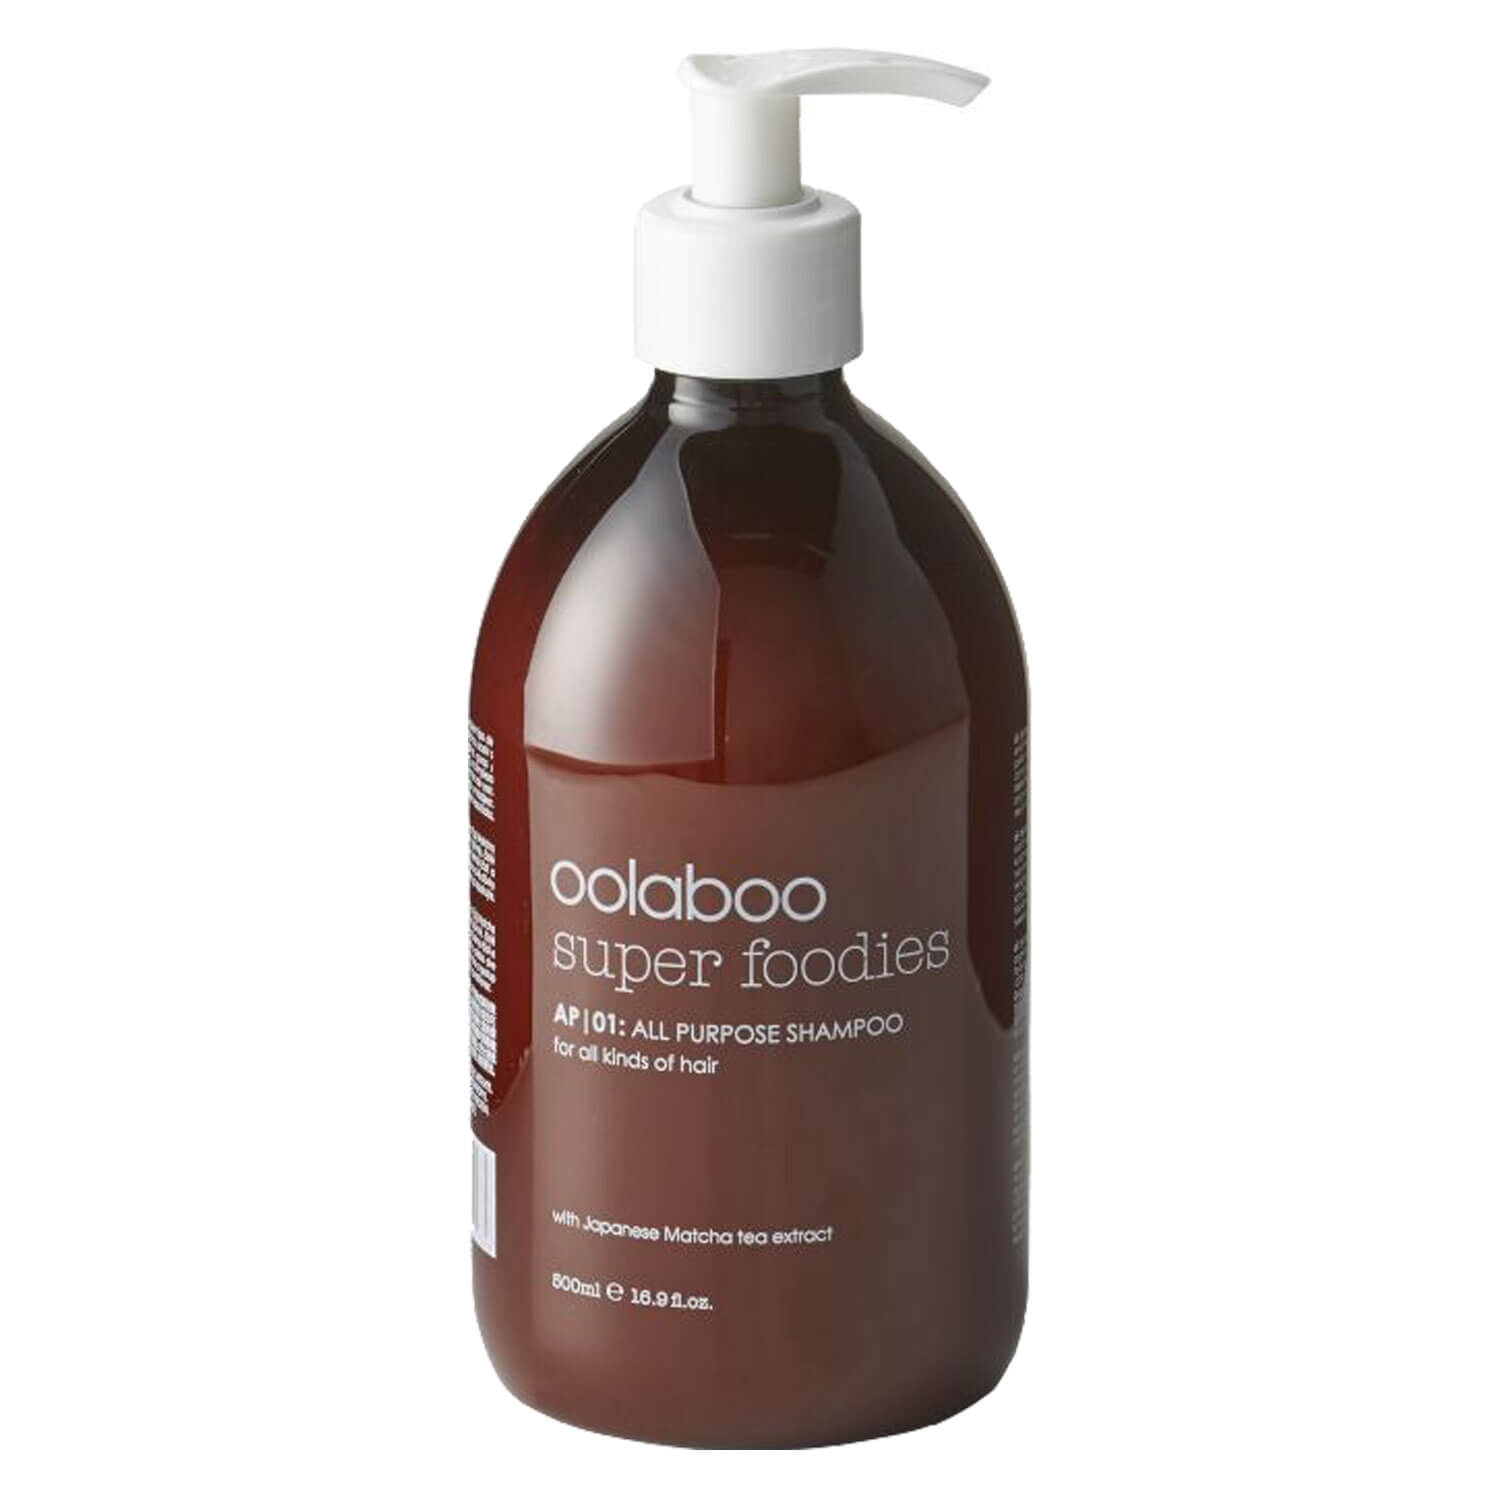 Produktbild von super foodies - all purpose shampoo